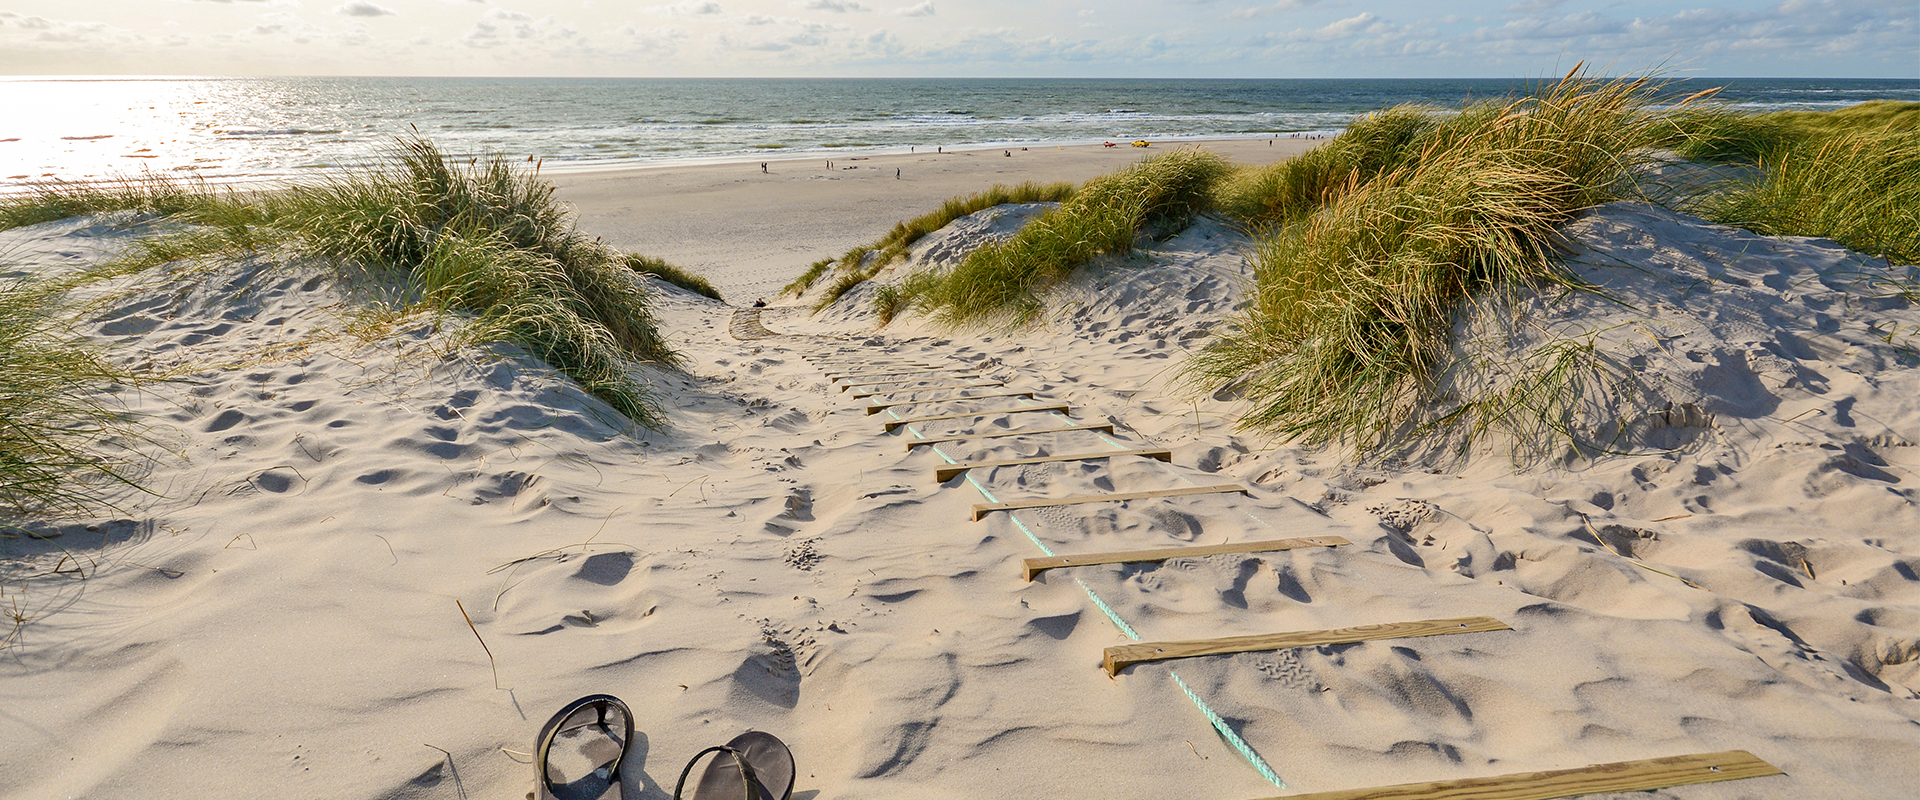 🇩🇰 Ferienhaus Dänemark mit Hund An der Ostsee, direkt am Strand